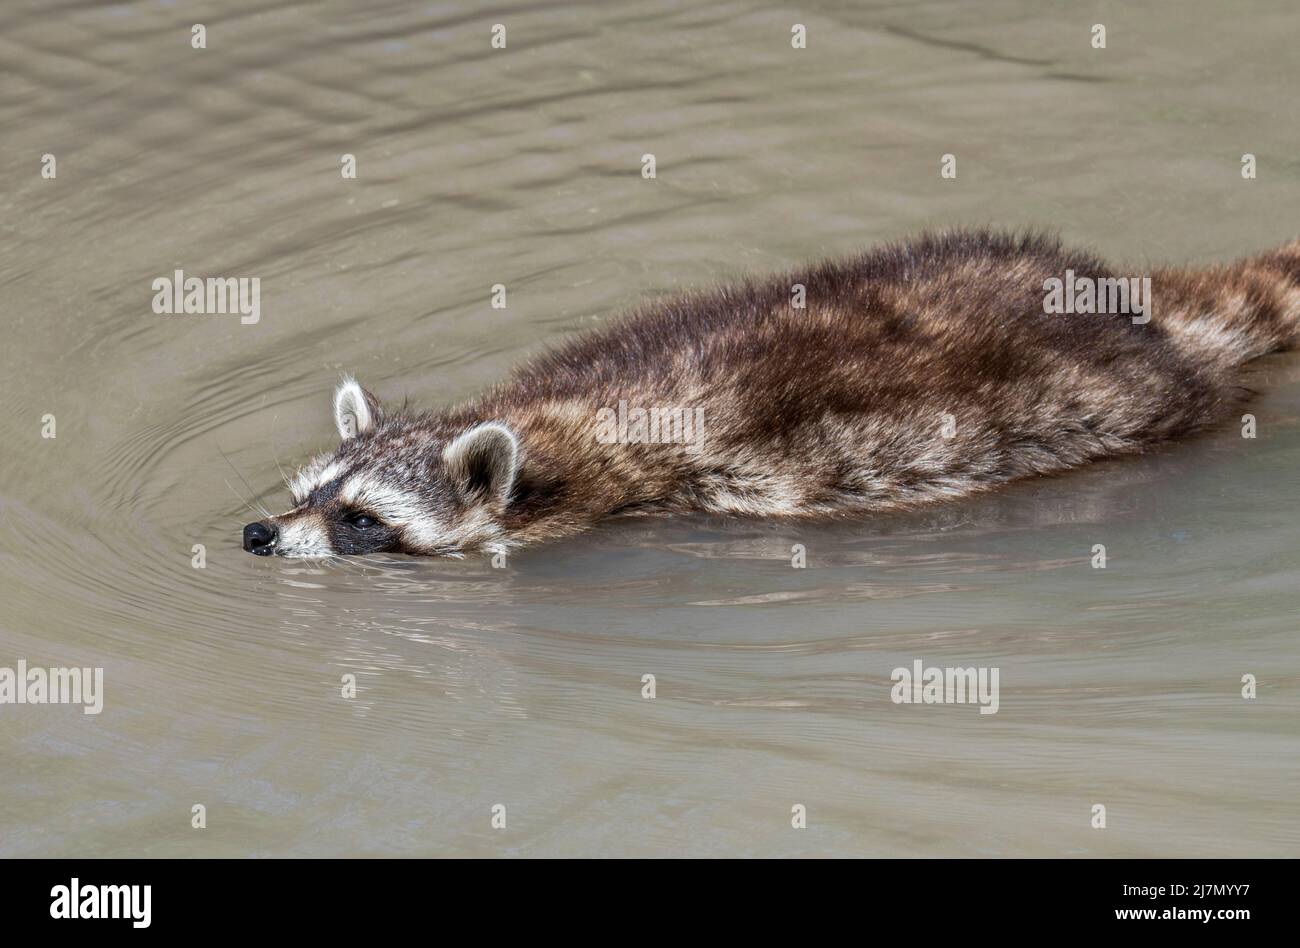 Raton laveur commun (Procyon lotor) traversant ruisseau / rivulet par la natation, espèces envahissantes en Europe native de l'Amérique du Nord Banque D'Images